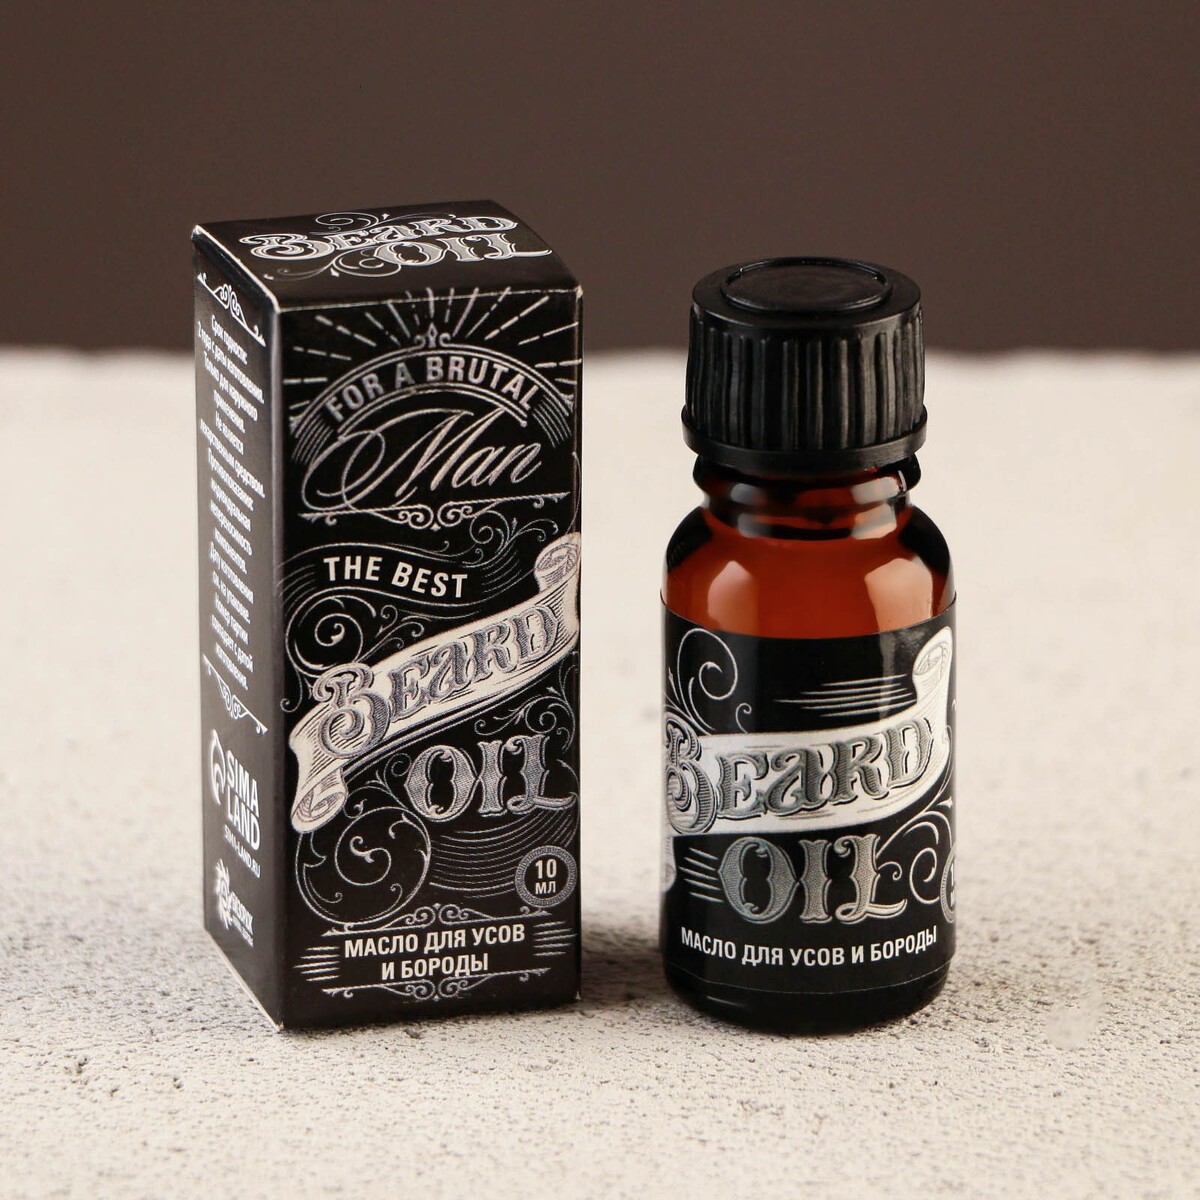      beard oil, 10 